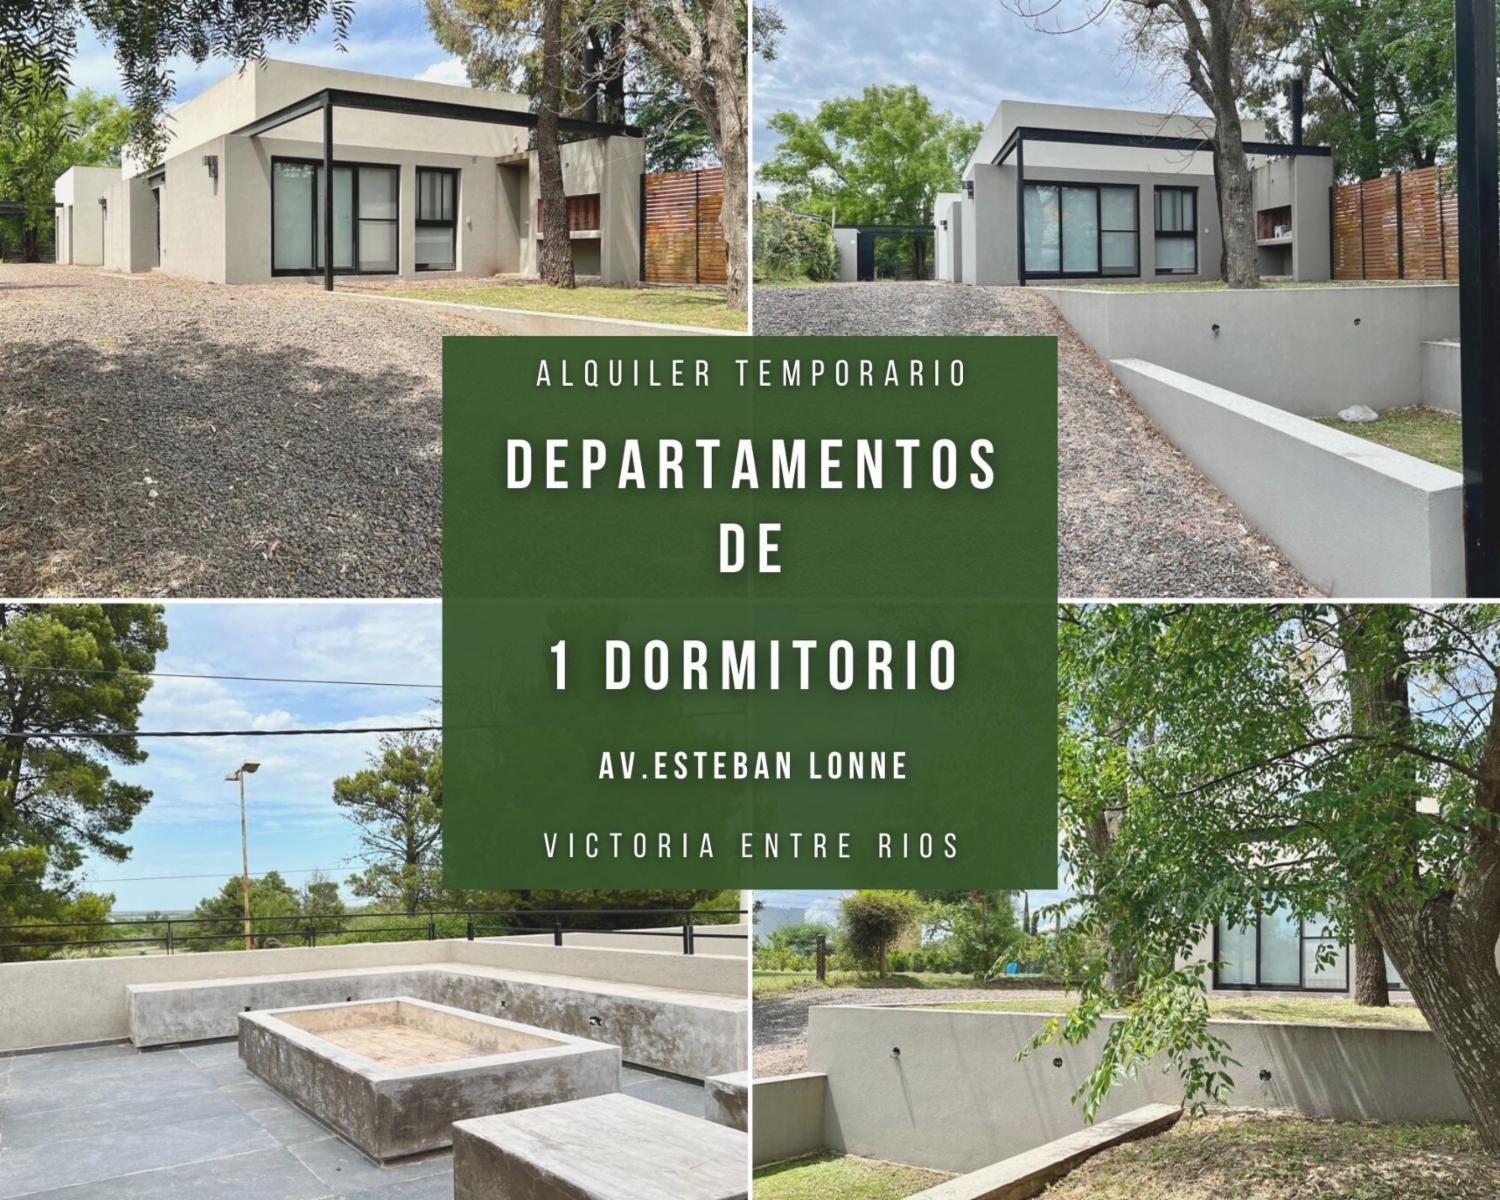 Alquiler Temporario - Biloba Aparts -  Departamento 01 - CAMA MATRIMONIAL - MAXIMO 2 PERSONAS  Av. 